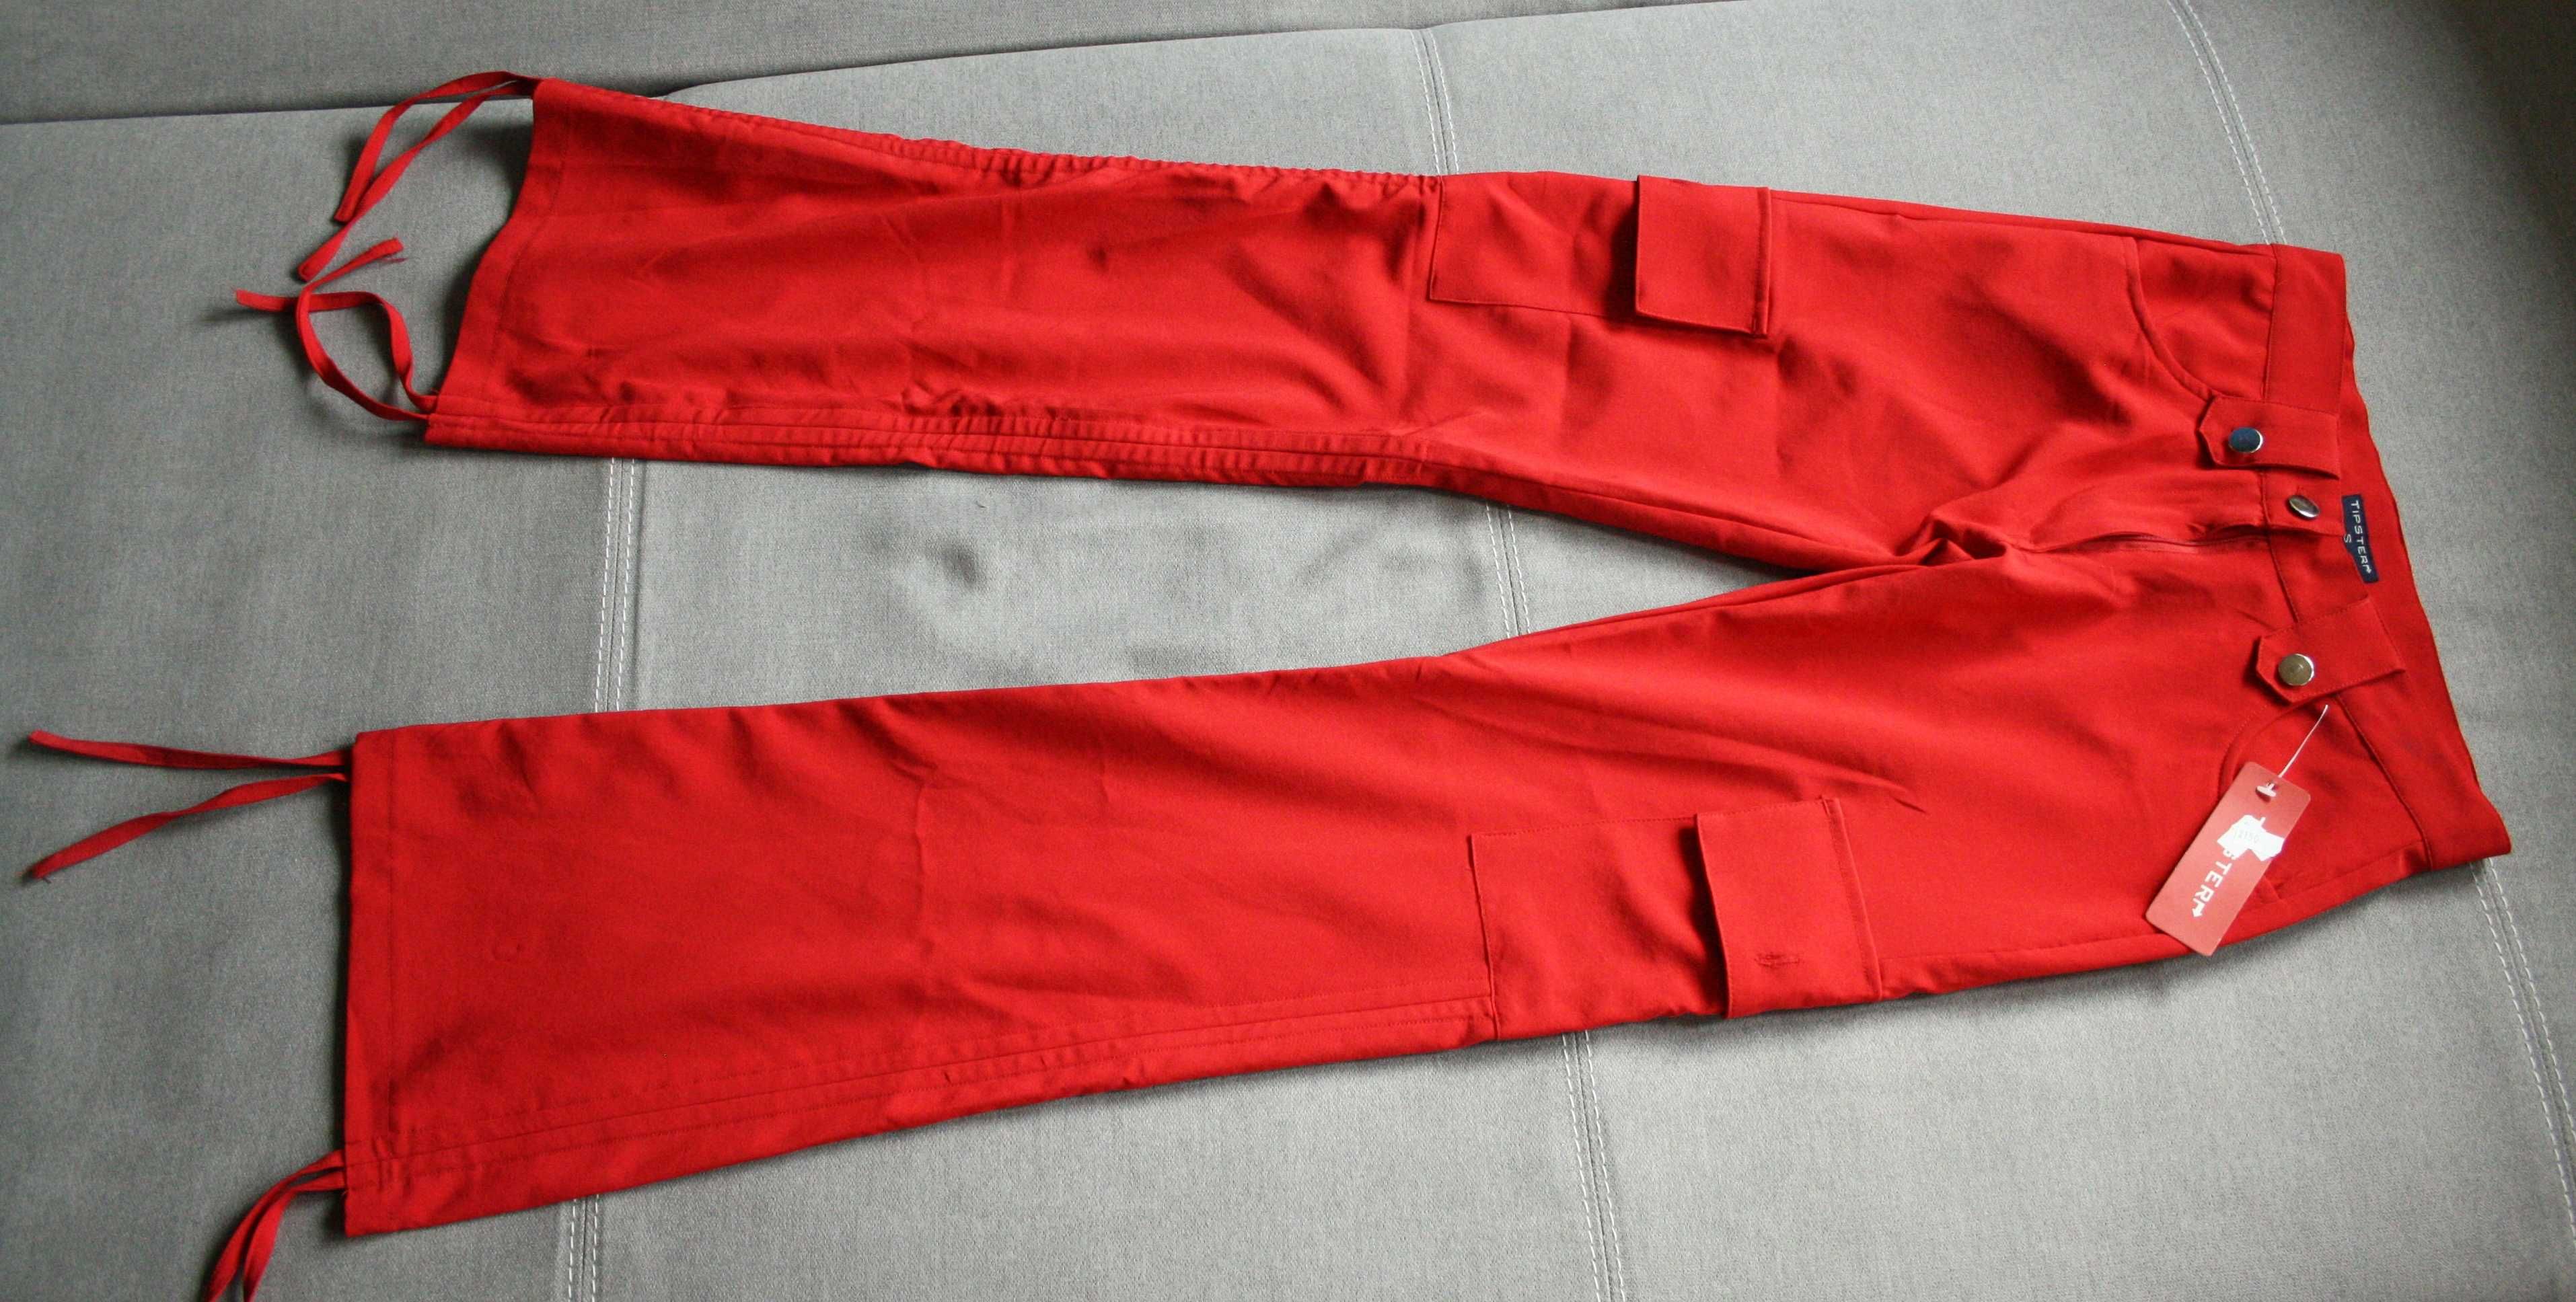 6 par spodni damskich - intensywne kolory - roz. S - nowe